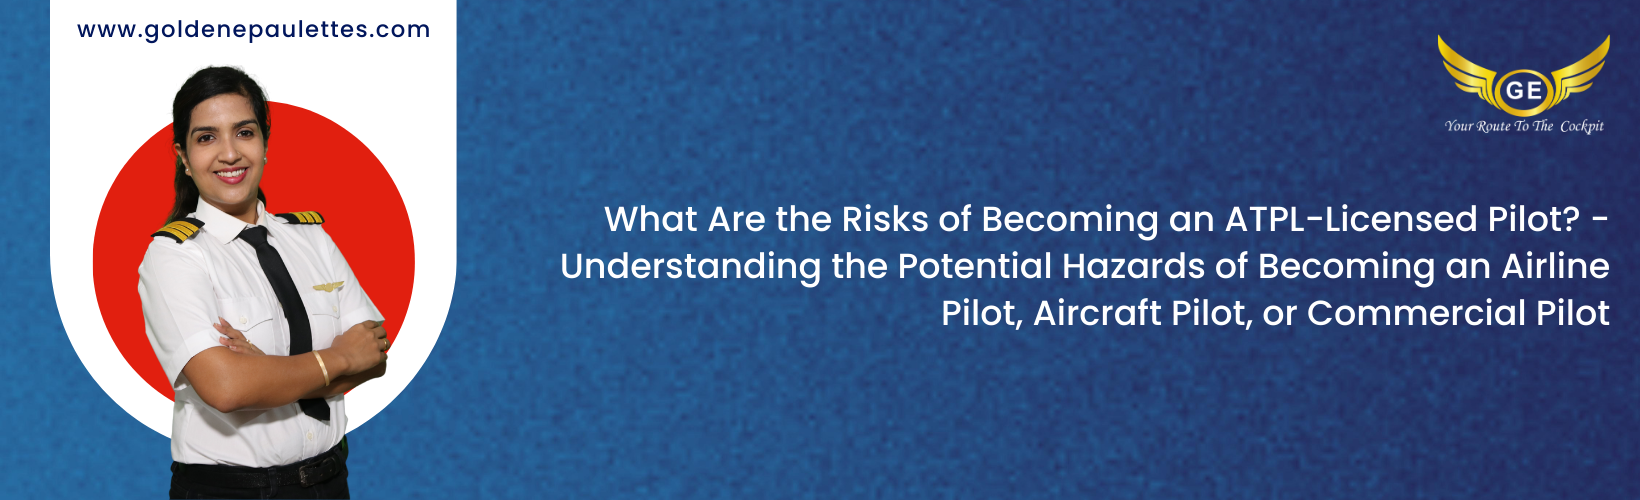 The Future of ATPL-Licensed Pilots